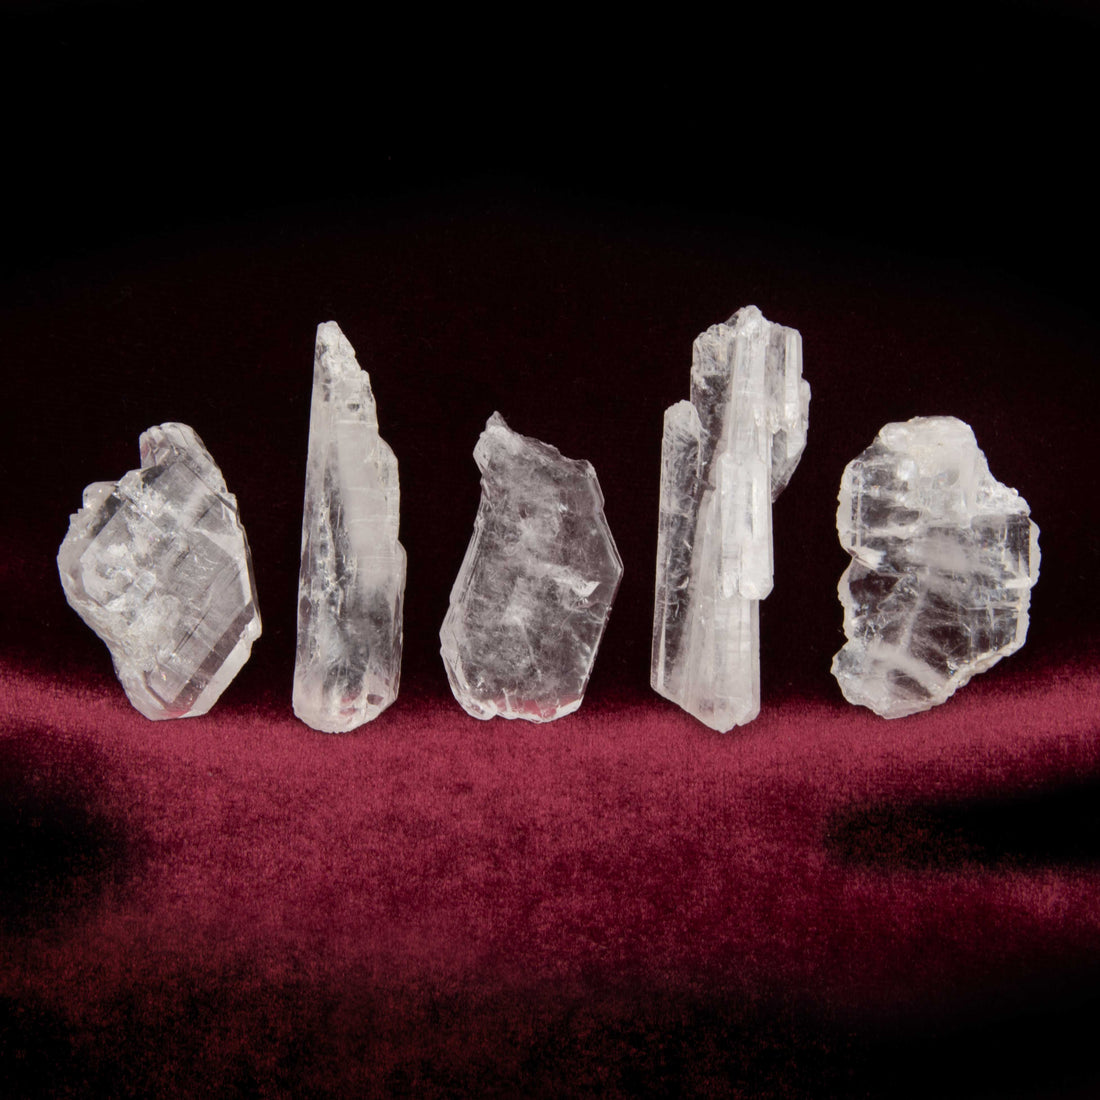 Quartz - Faden Crystals